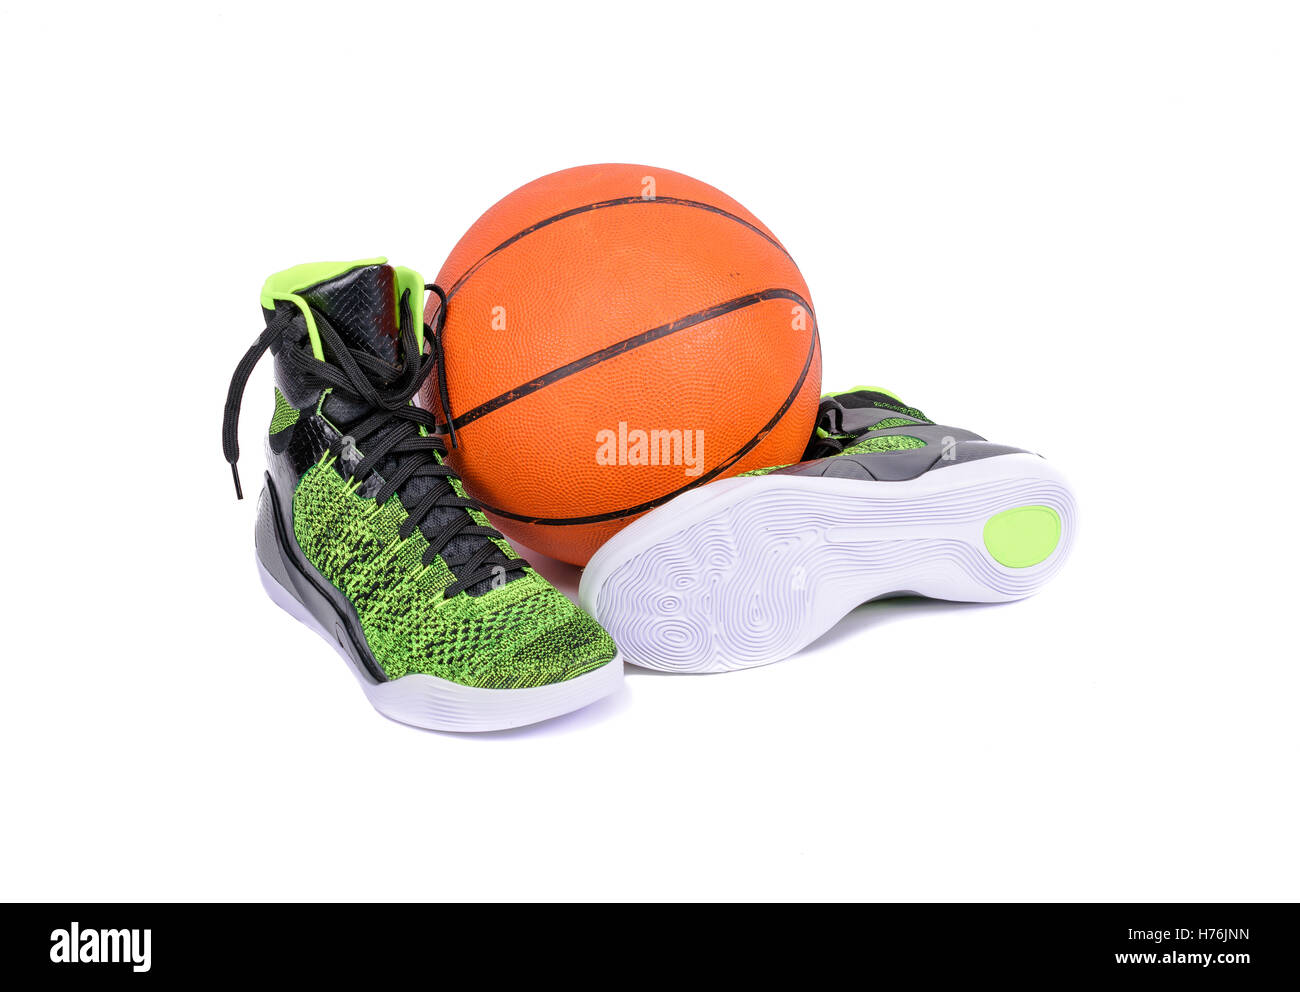 Ultra moderne High-Top-grün und schwarz Basketball Schuhe Turnschuhe mit  einem Basketball, isoliert auf weiss Stockfotografie - Alamy